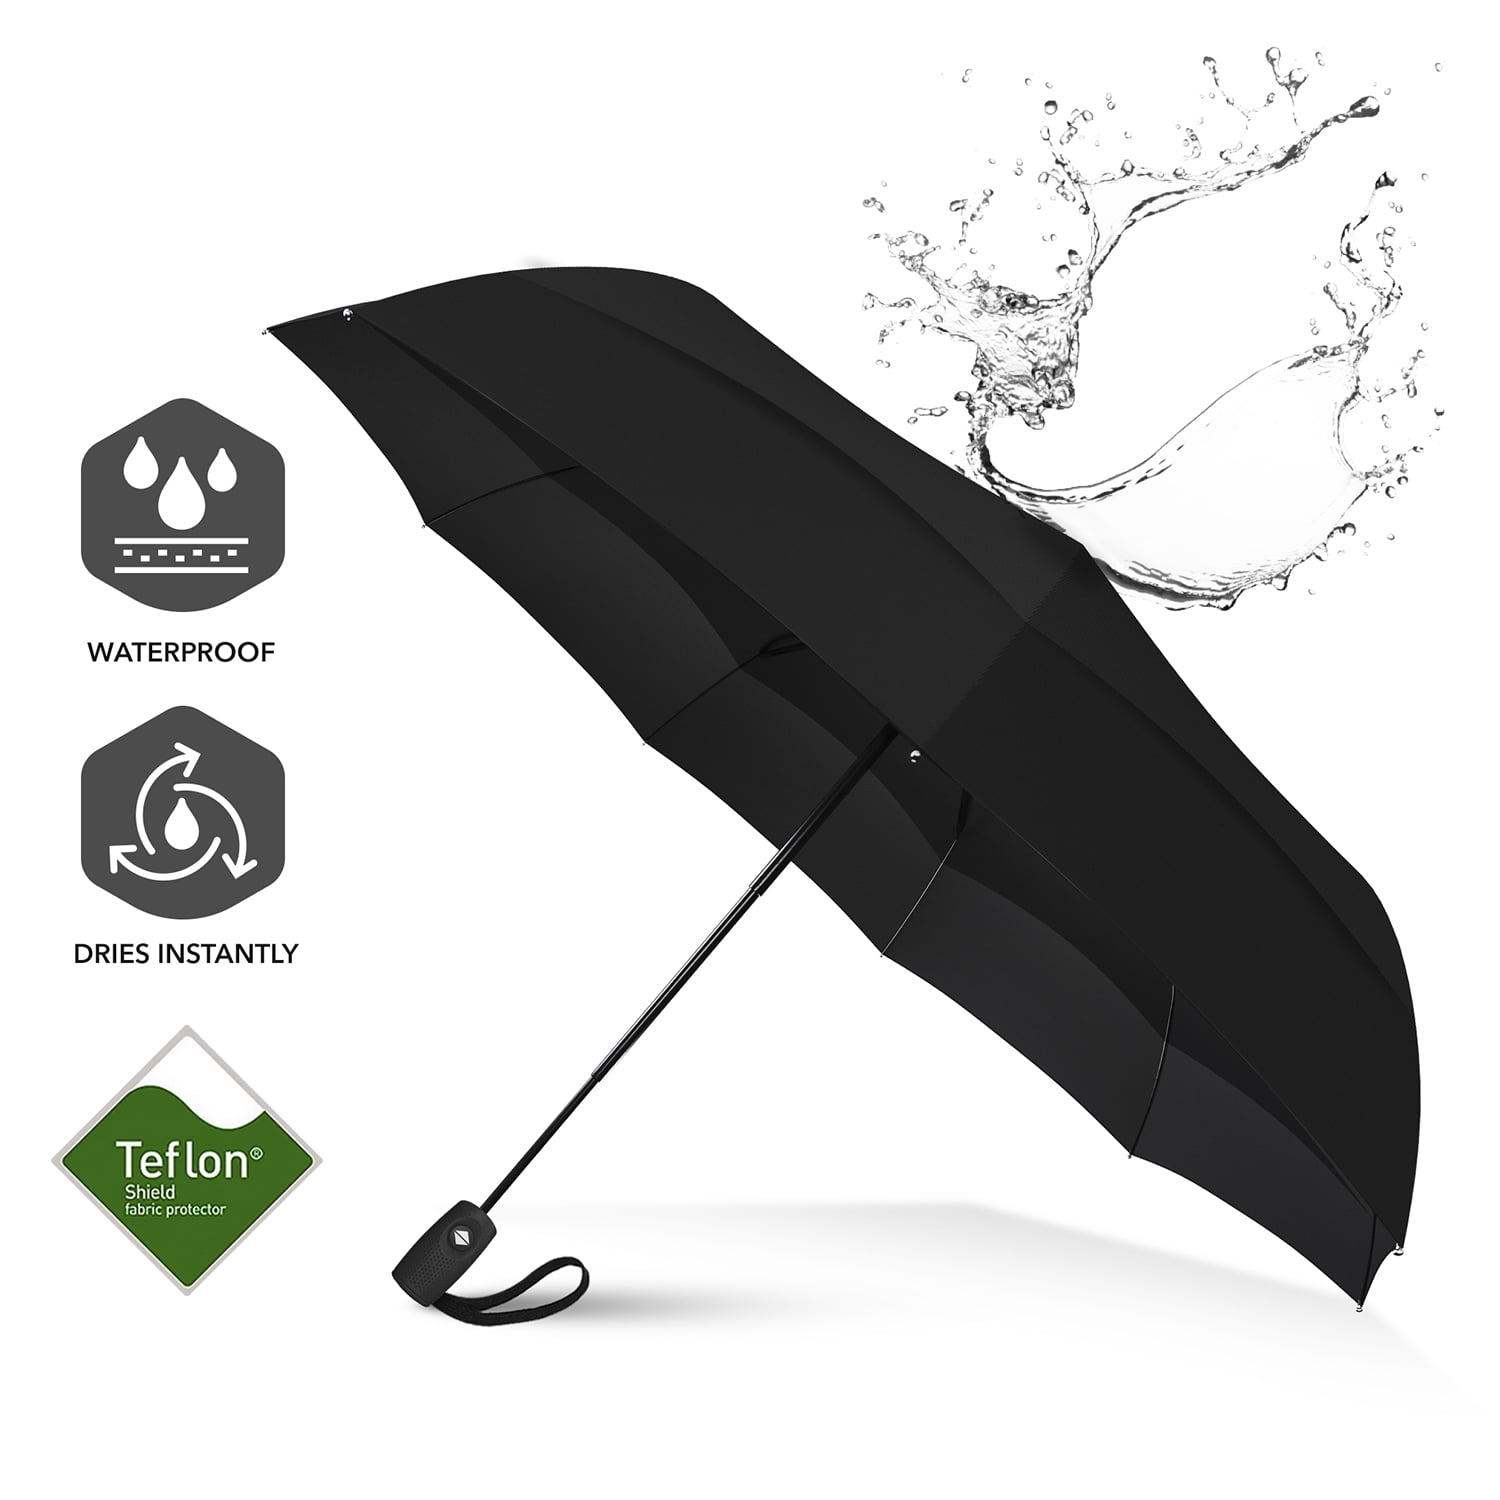 black Brainstorming Windproof Travel Umbrella Ergonomic Handle Teflon Coating Compact Portable Outdoor Umbrellas with 8 Fiberglass Ribs Auto Open & Close 